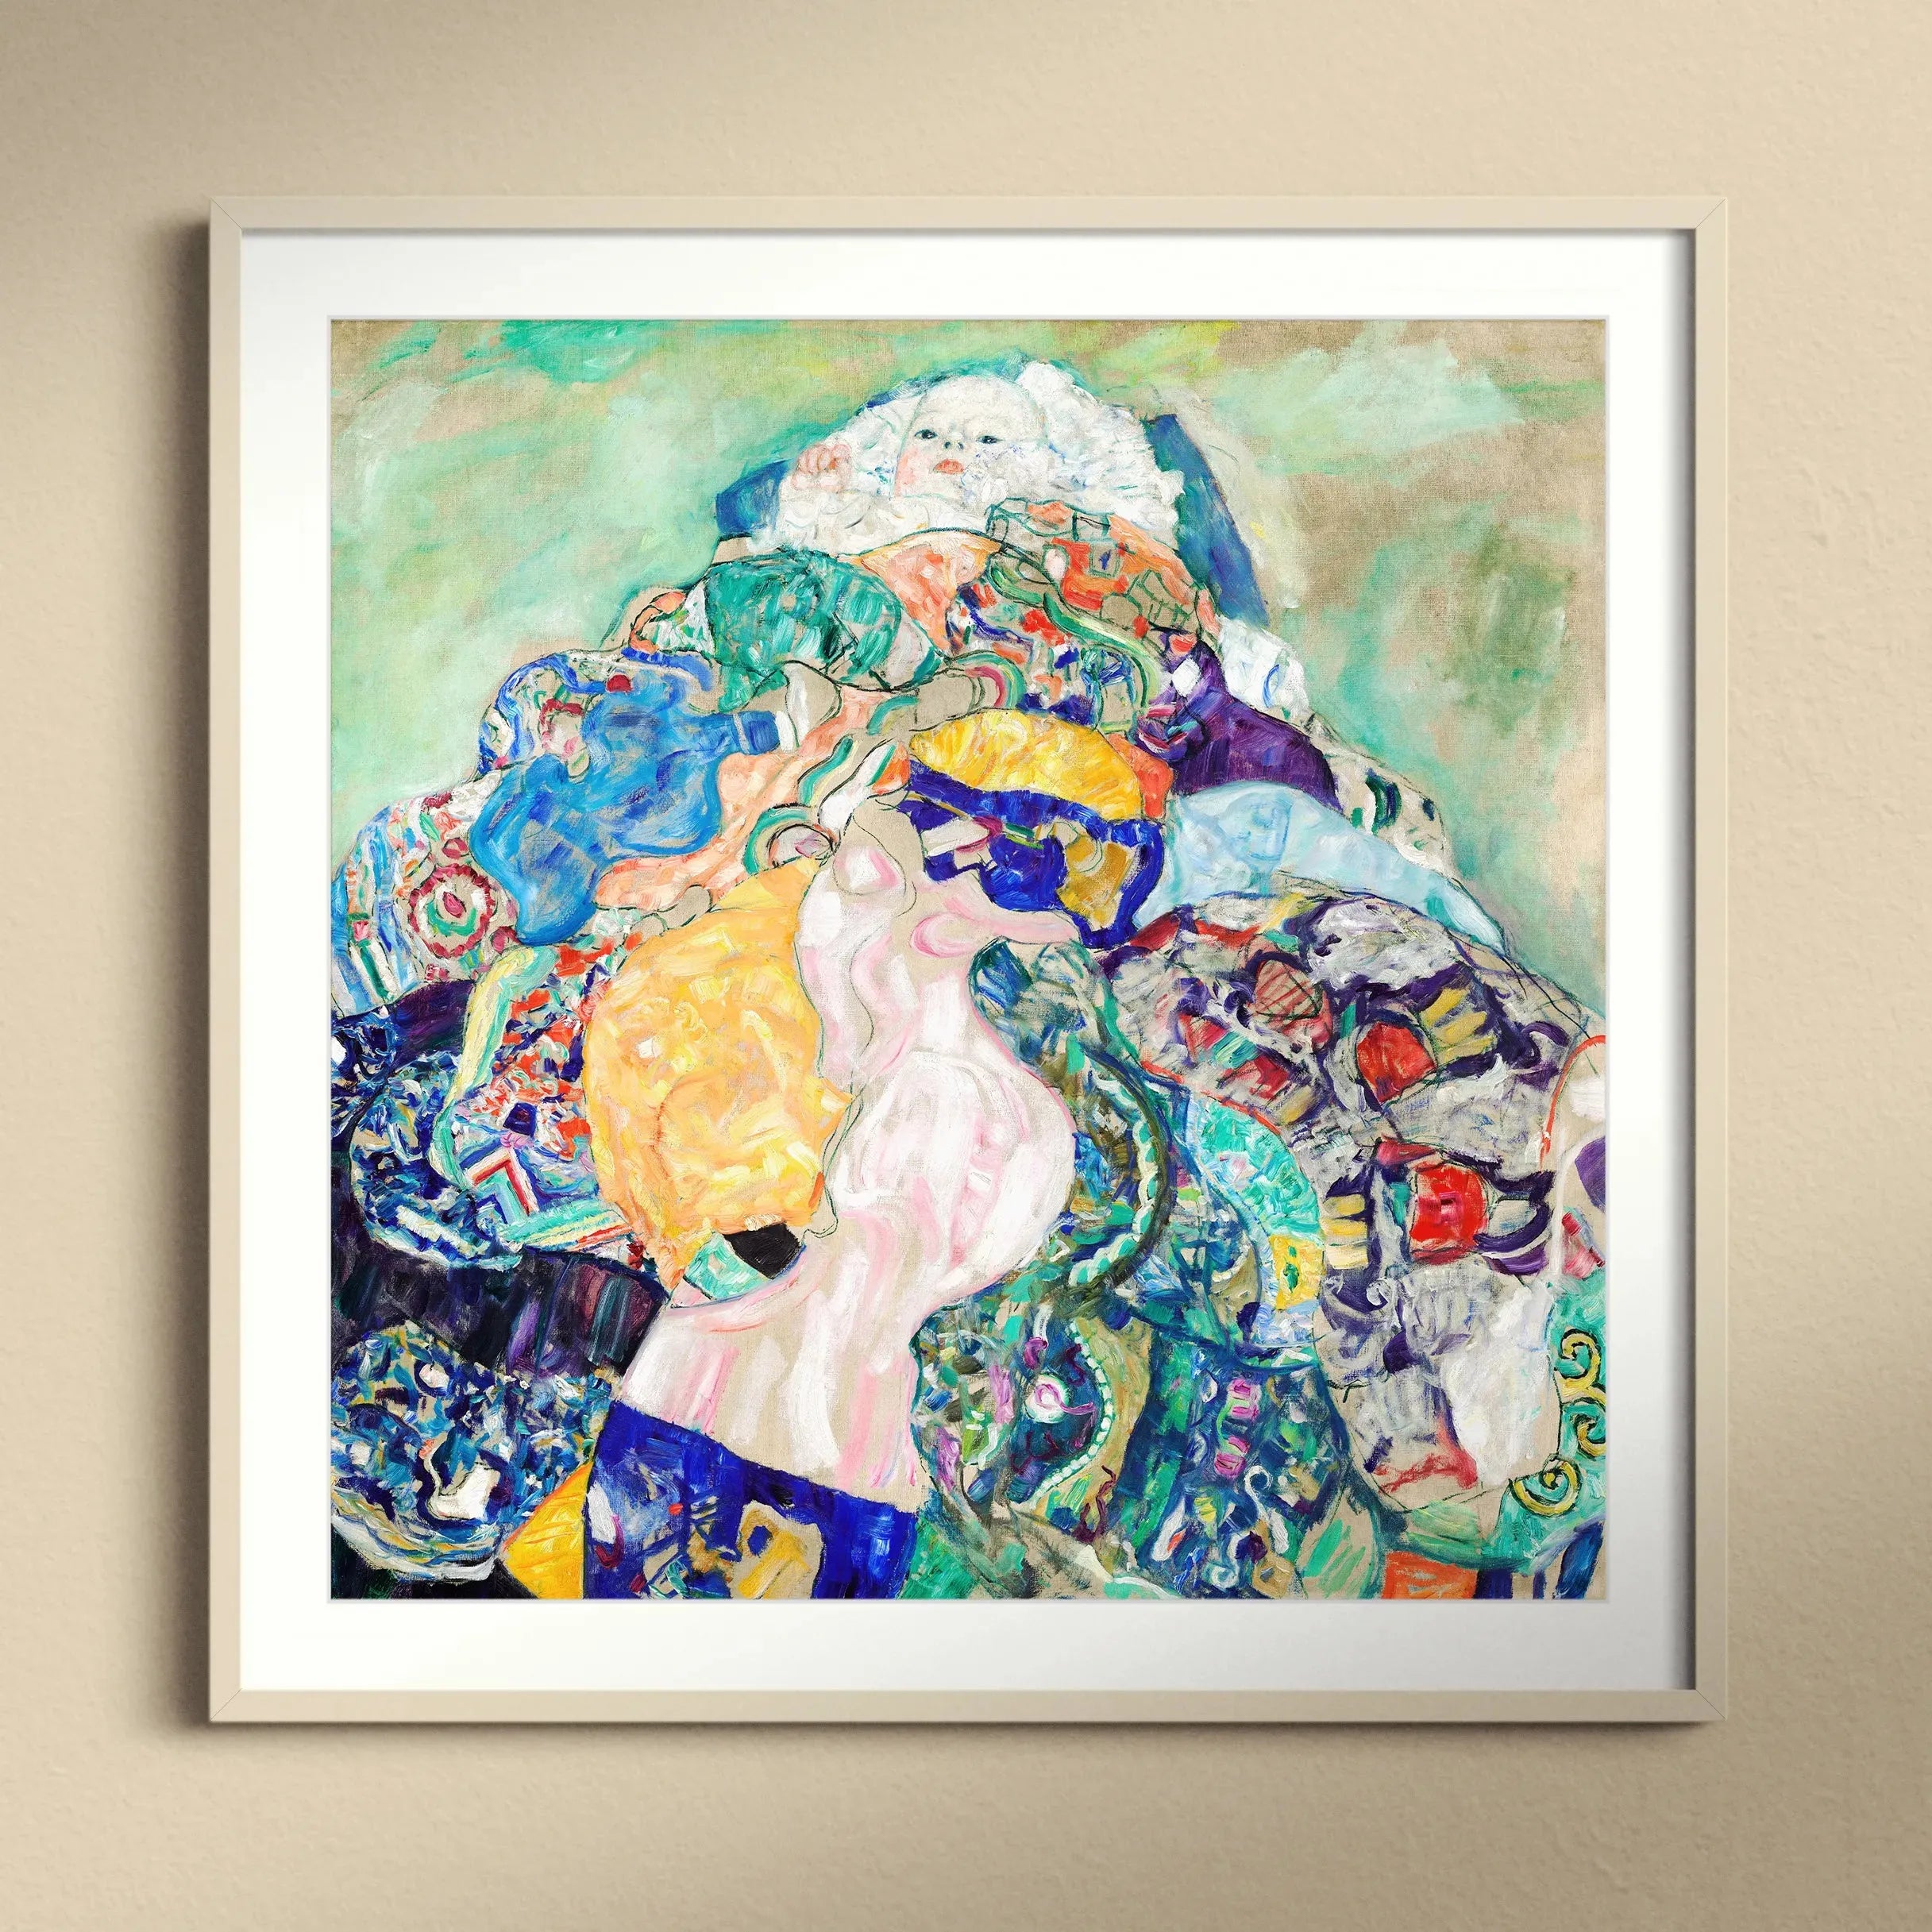 Baby By Gustav Klimt Framed & Mounted Print - 12’x12’ / White Frame - Posters Prints & Visual Artwork - Aesthetic Art